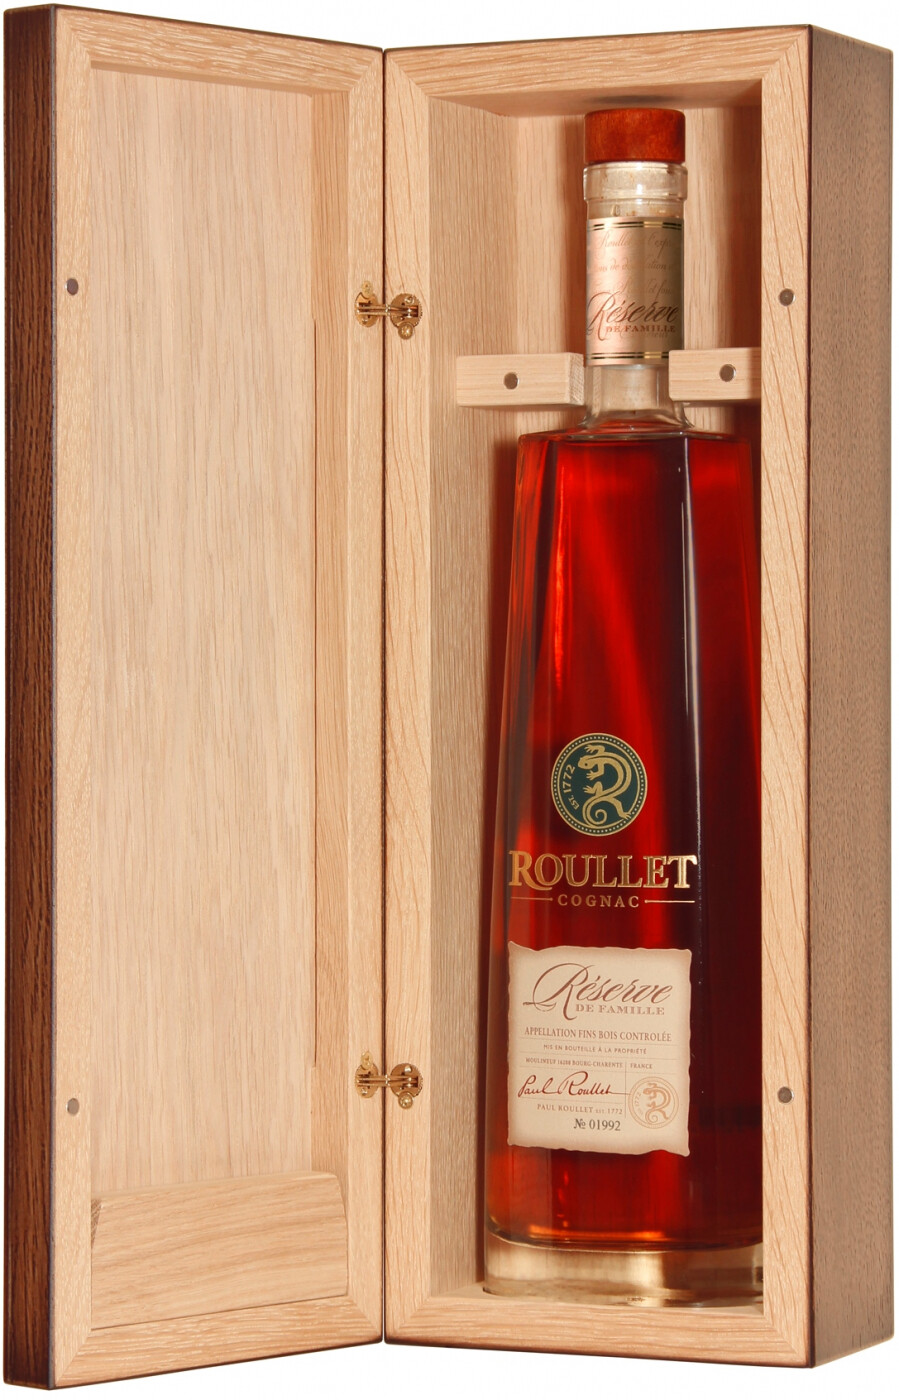 Roullet cognac цена. Коньяк "Roullet " Reserve de famille, fins bois AOC, Wooden Box, 0.7 л. Коньяк Delamain Reserve de la famille. Коньяк "Lautrec " Reserve de la famille, Wooden Box, 0.7 л. Коньяк Рулле.